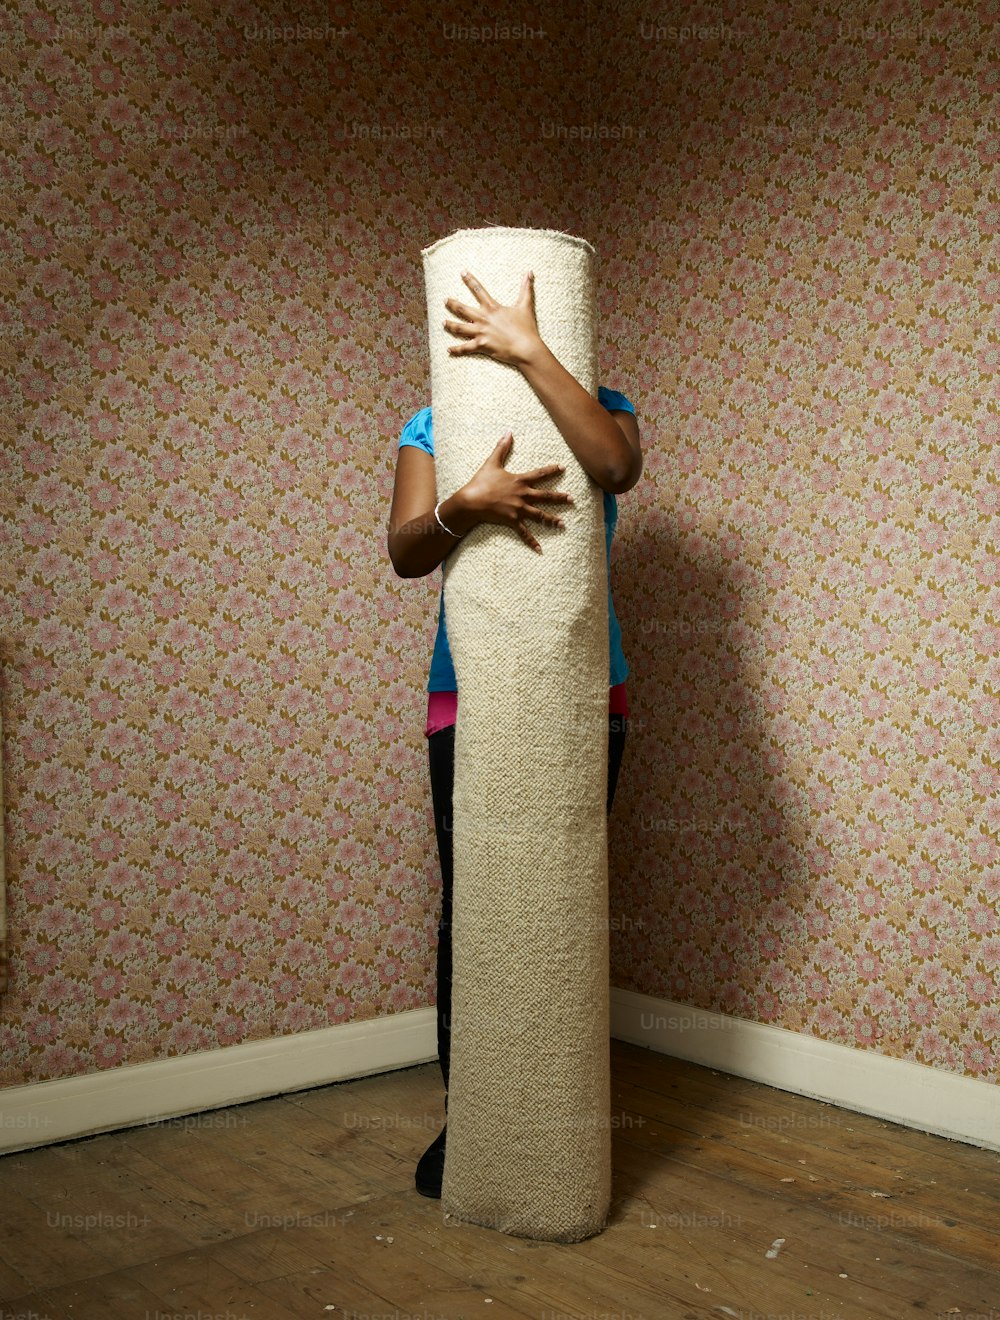 Eine Frau versteckt sich hinter einer großen Rolle Toilettenpapier